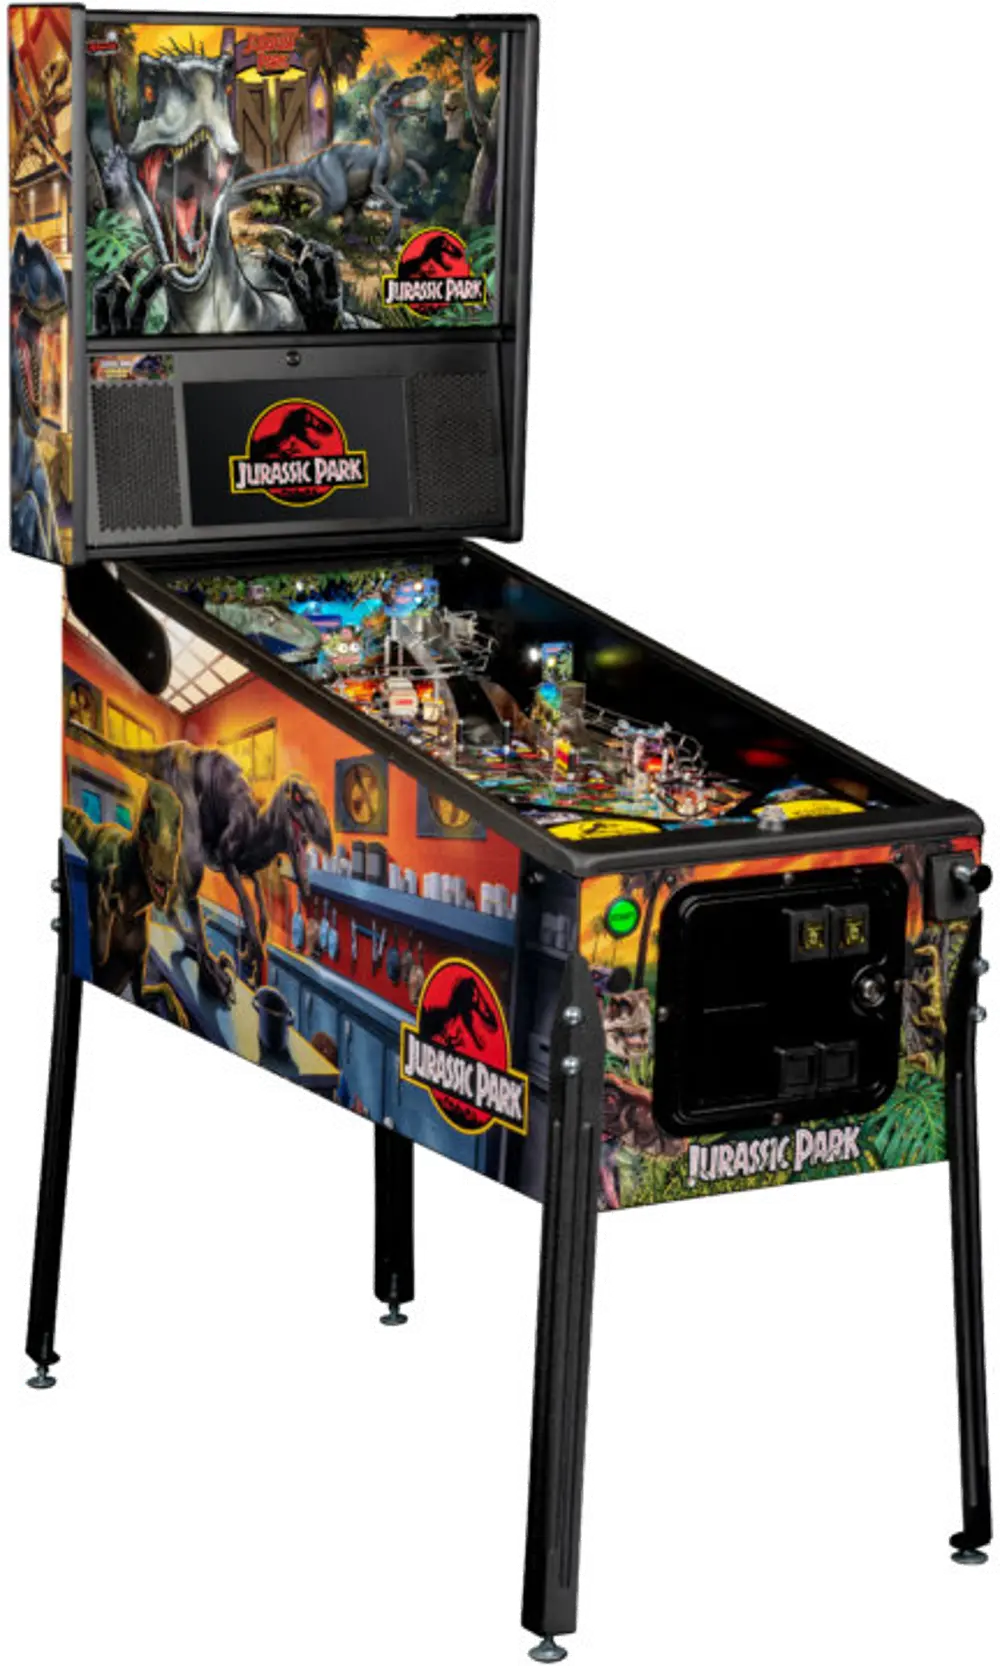 500-55M3-01 Stern Pinball Jurassic Park Premium Edition Pinball Machine-1